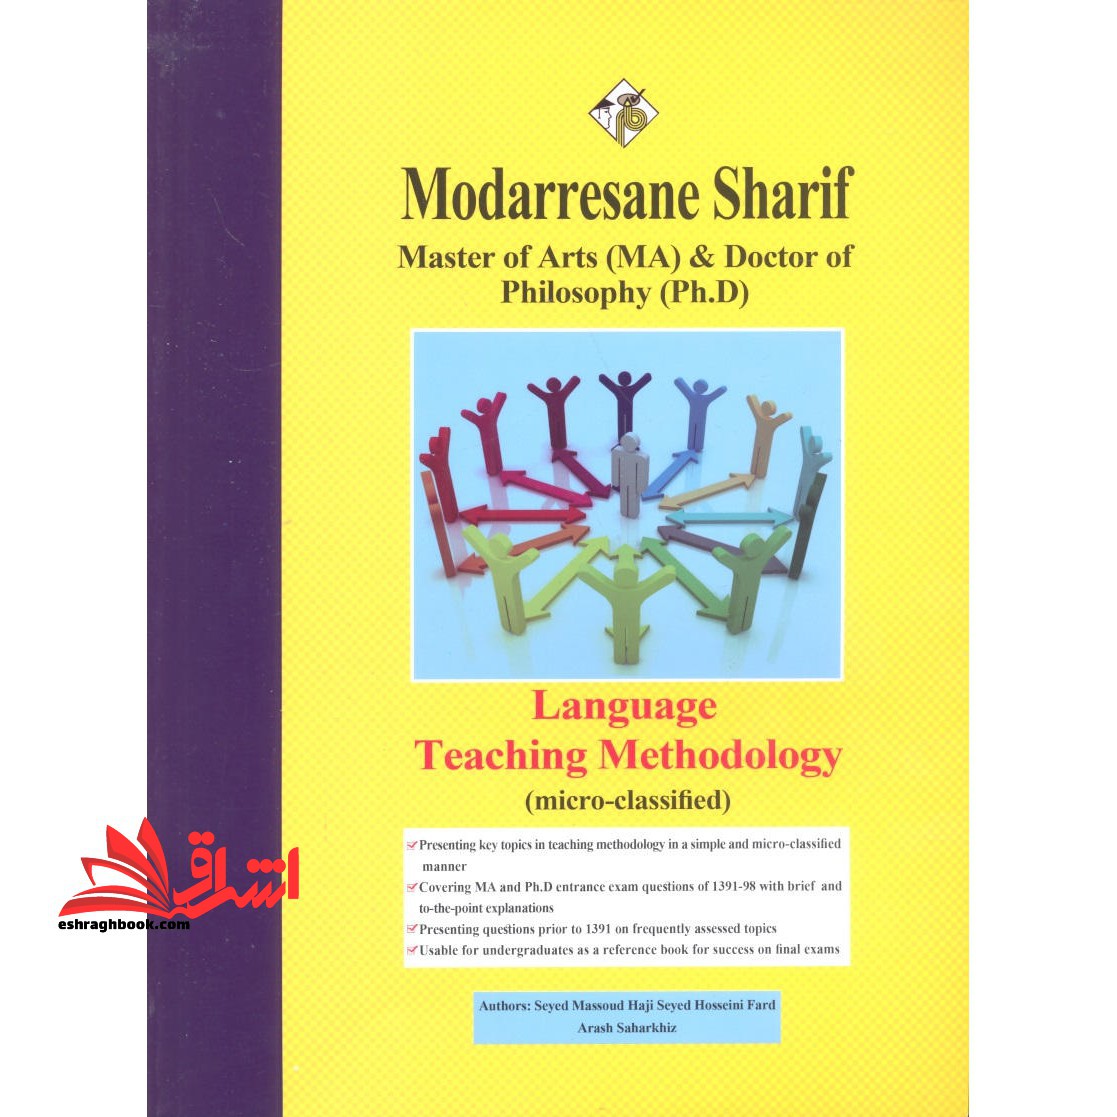 روش تدریس زبان انگلیسی (Language Teaching Methodology) میکرو طبقه بندی شده (کارشناسی ارشد و دکتری)